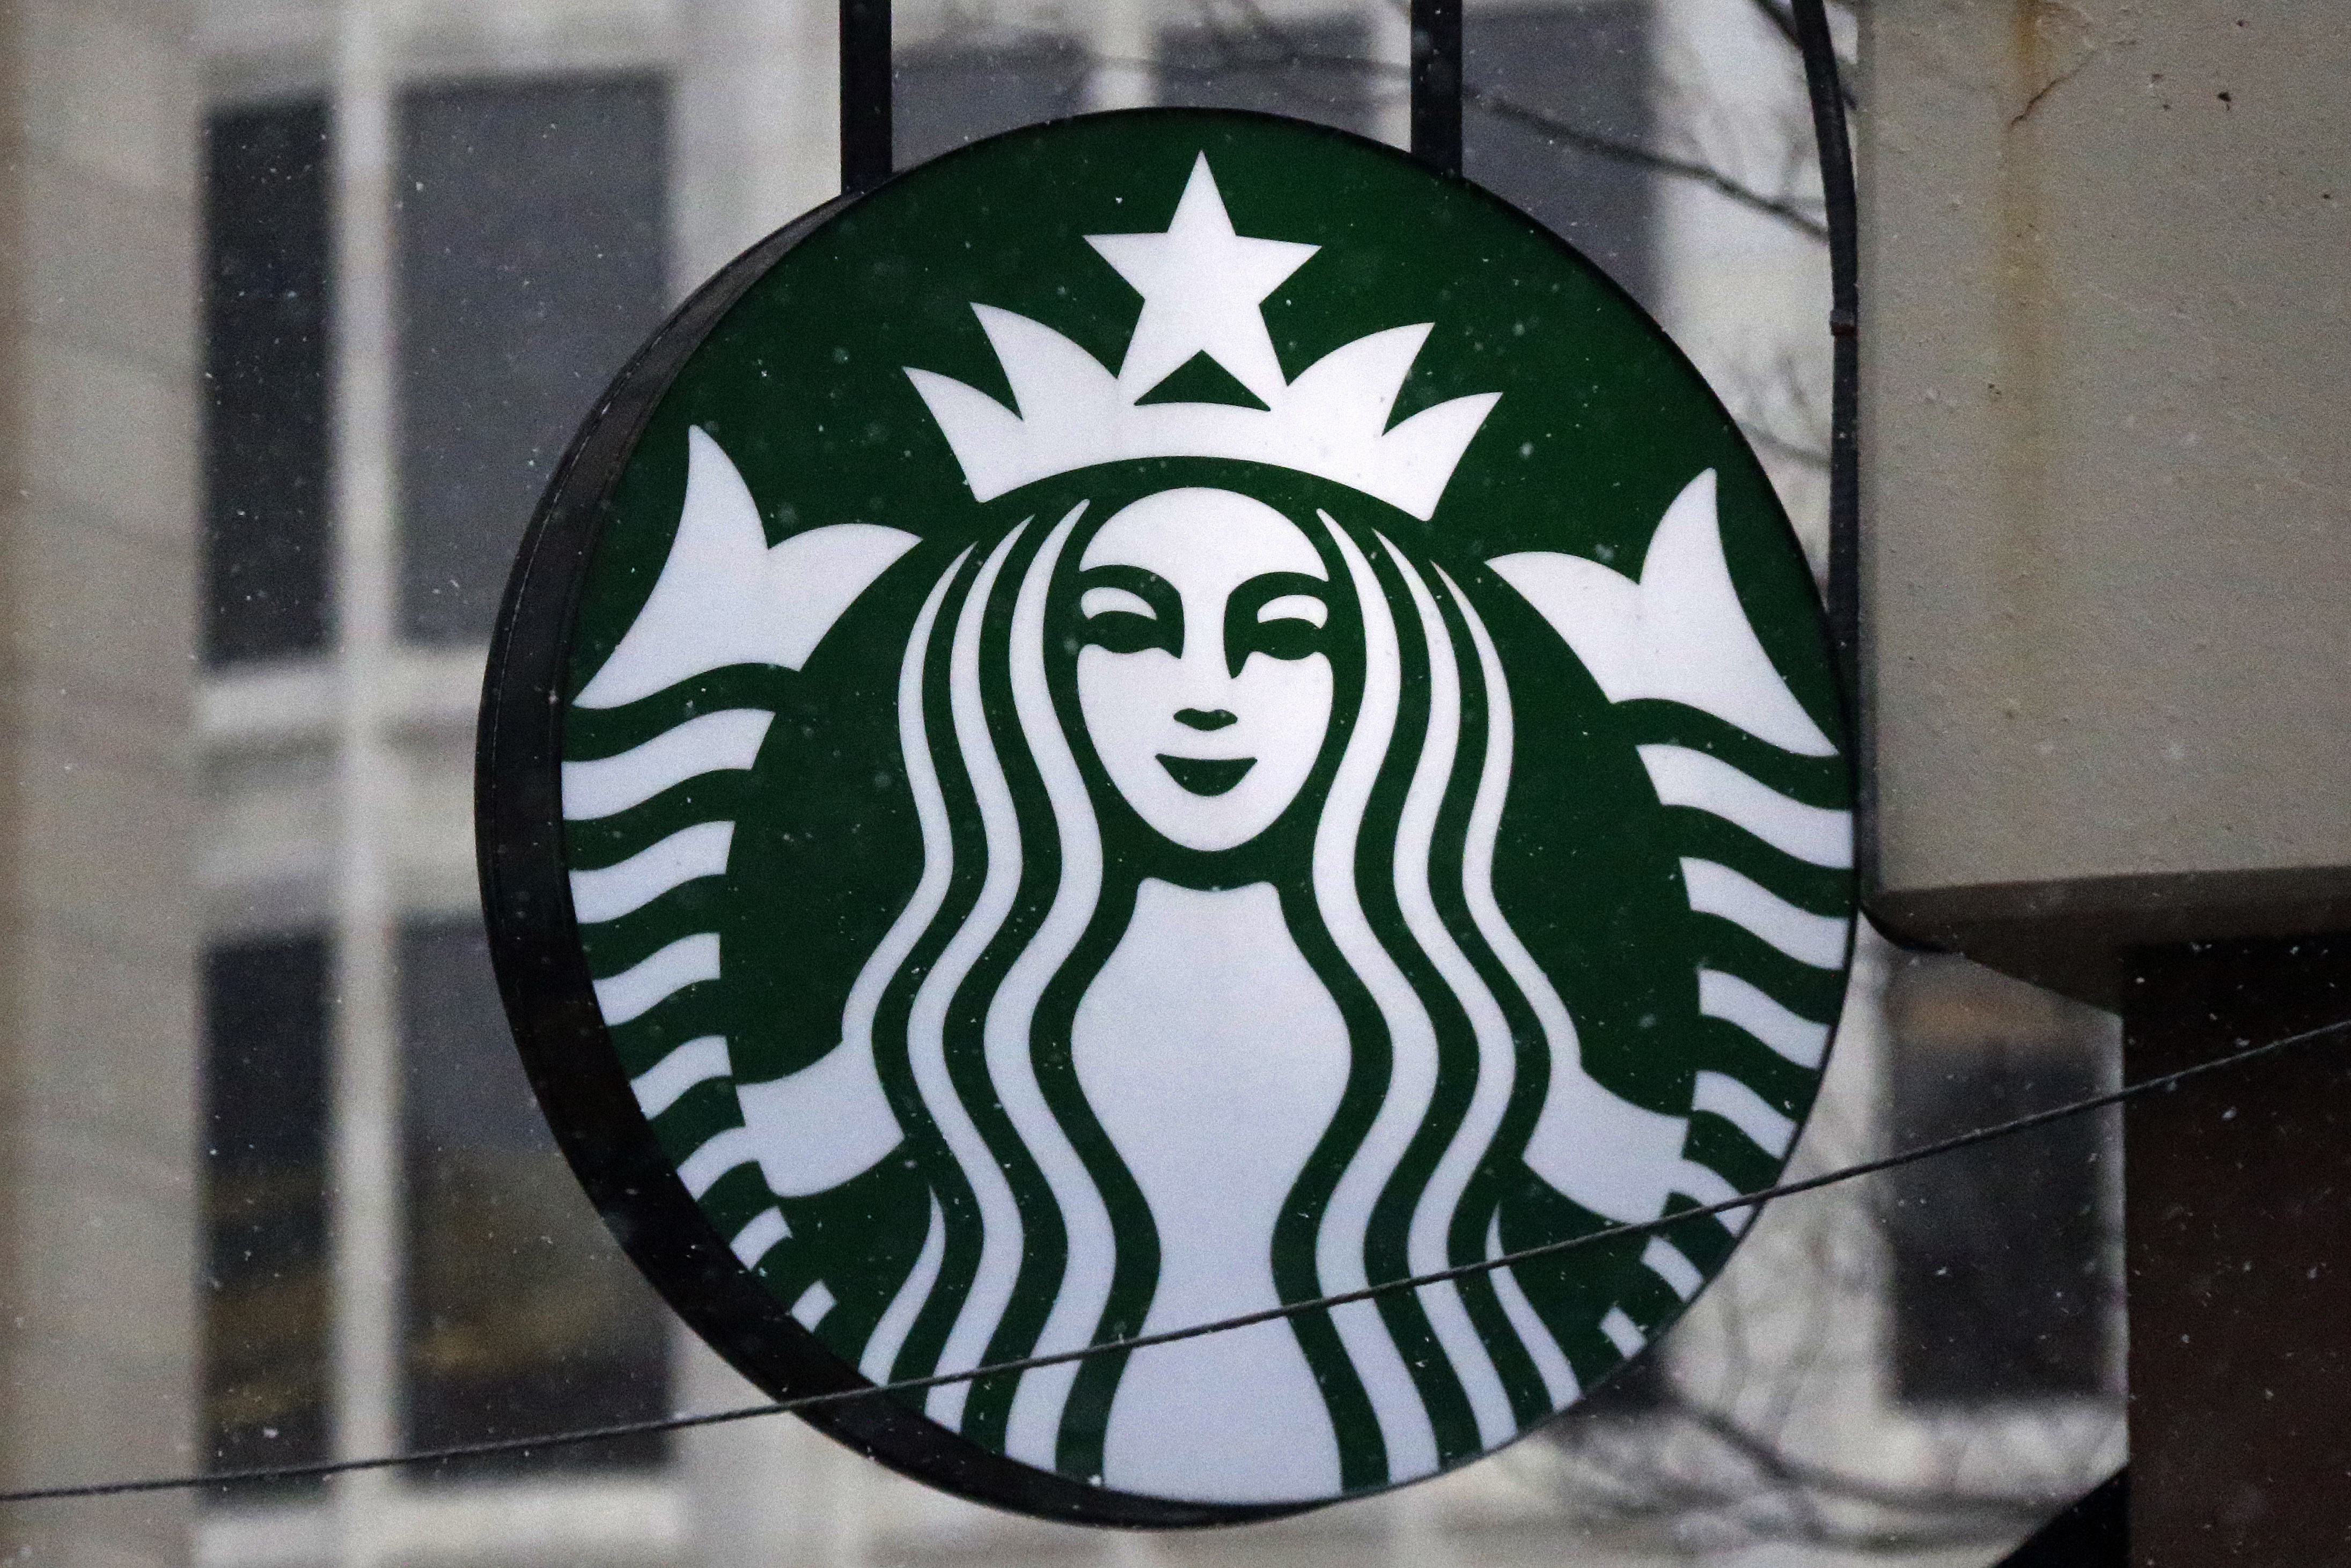 Recompensará Starbucks a quien logre hacer vasos ecofriendly - THE FOOD  TECH - Medio de noticias líder en la Industria de Alimentos y Bebidas